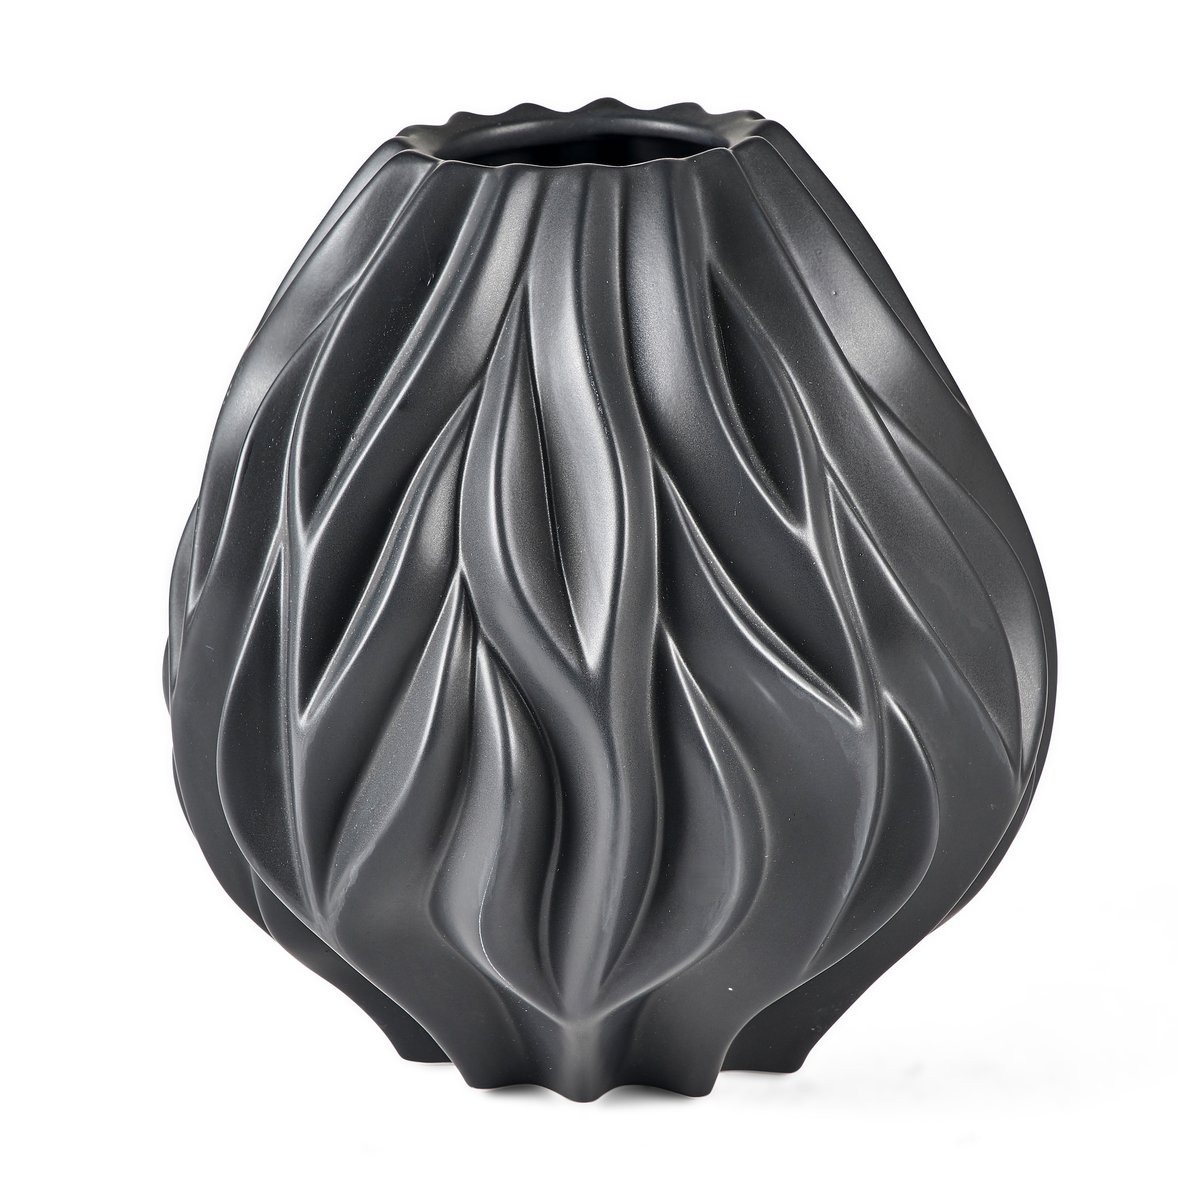 Bilde av Morsø Flame vase 23 cm Svart